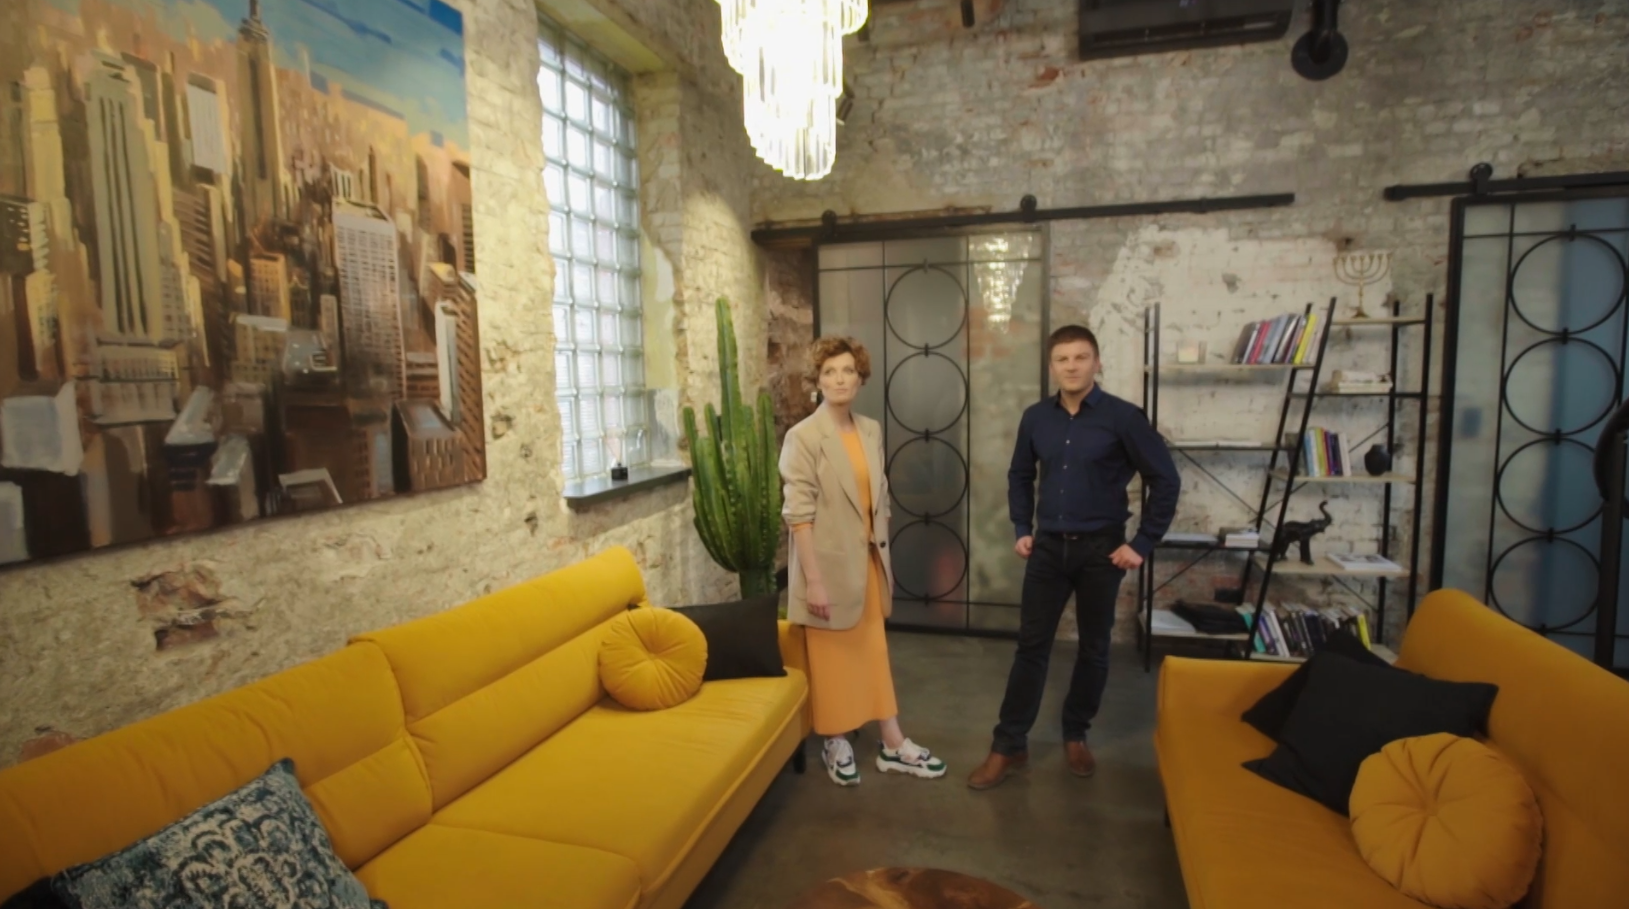 "Nieoczywiste miejsca": loft czyli "sztuka w fabryce". Jak urządzić taką przestrzeń?